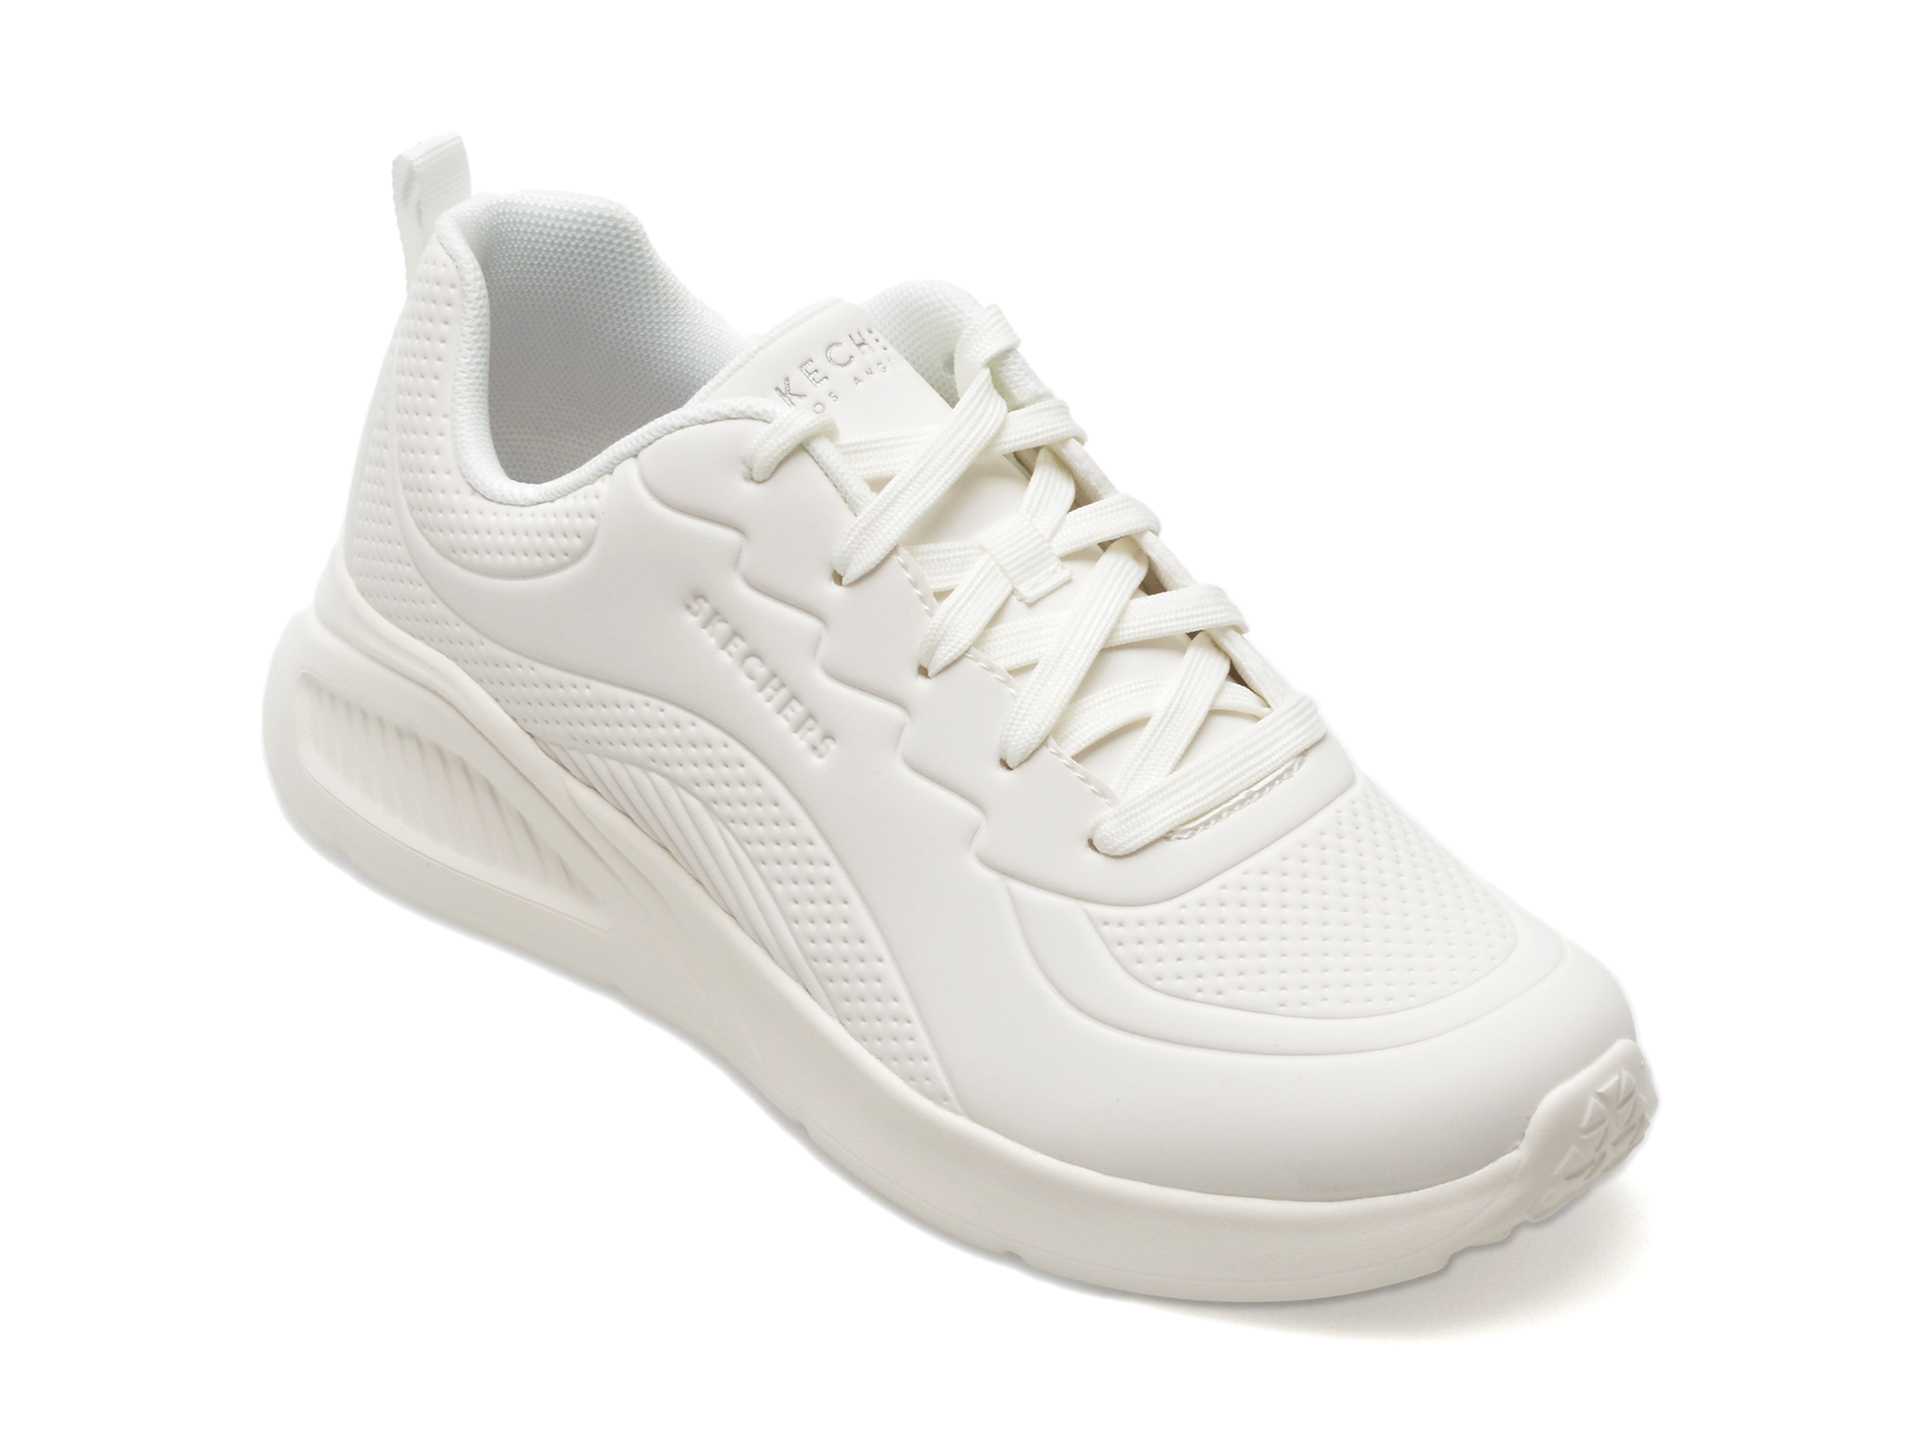 Pantofi SKECHERS albi, UNO LITE, din piele ecologica femei 2023-09-21